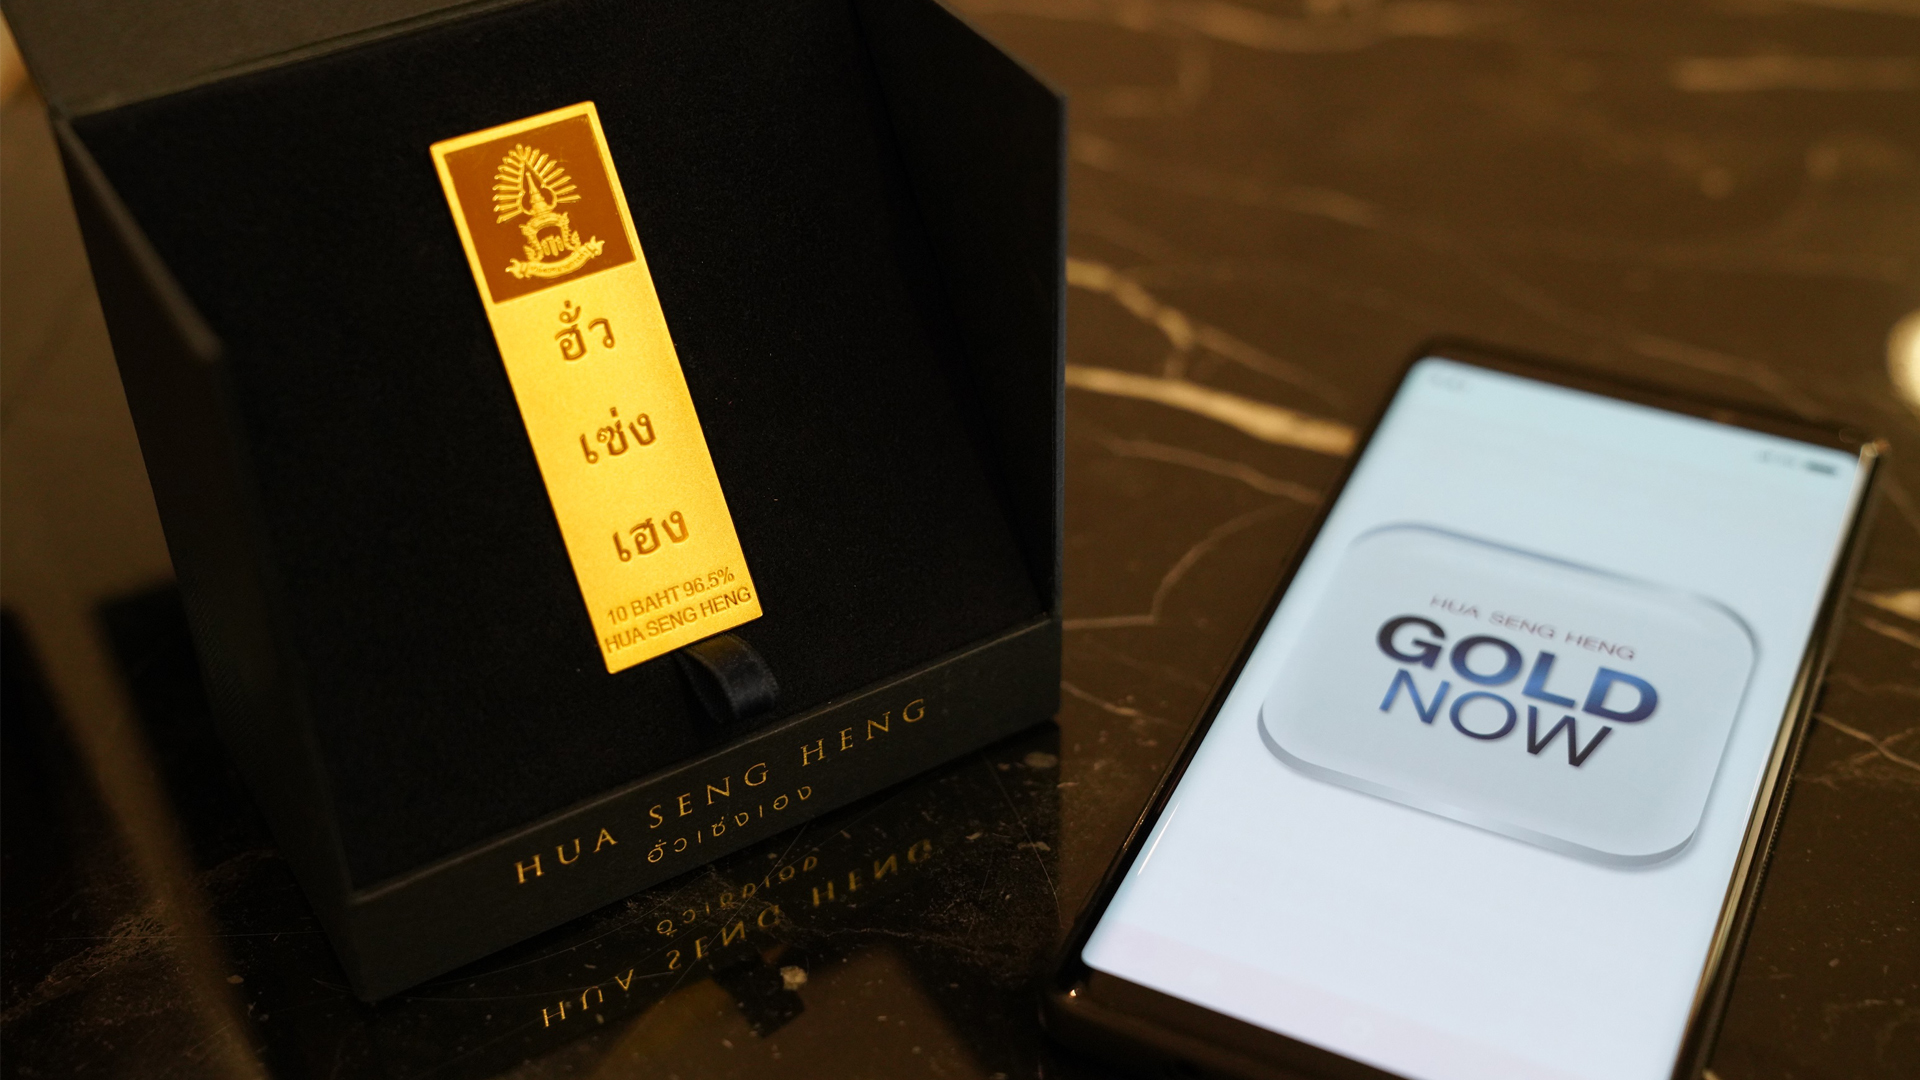 ฮั่วเซ่งเฮง ผนึก ไทยพาณิชย์ ส่งแอปฯ “GOLD NOW” แพลตฟอร์มซื้อ-ขายทองคำตัวใหม่ล่าสุด